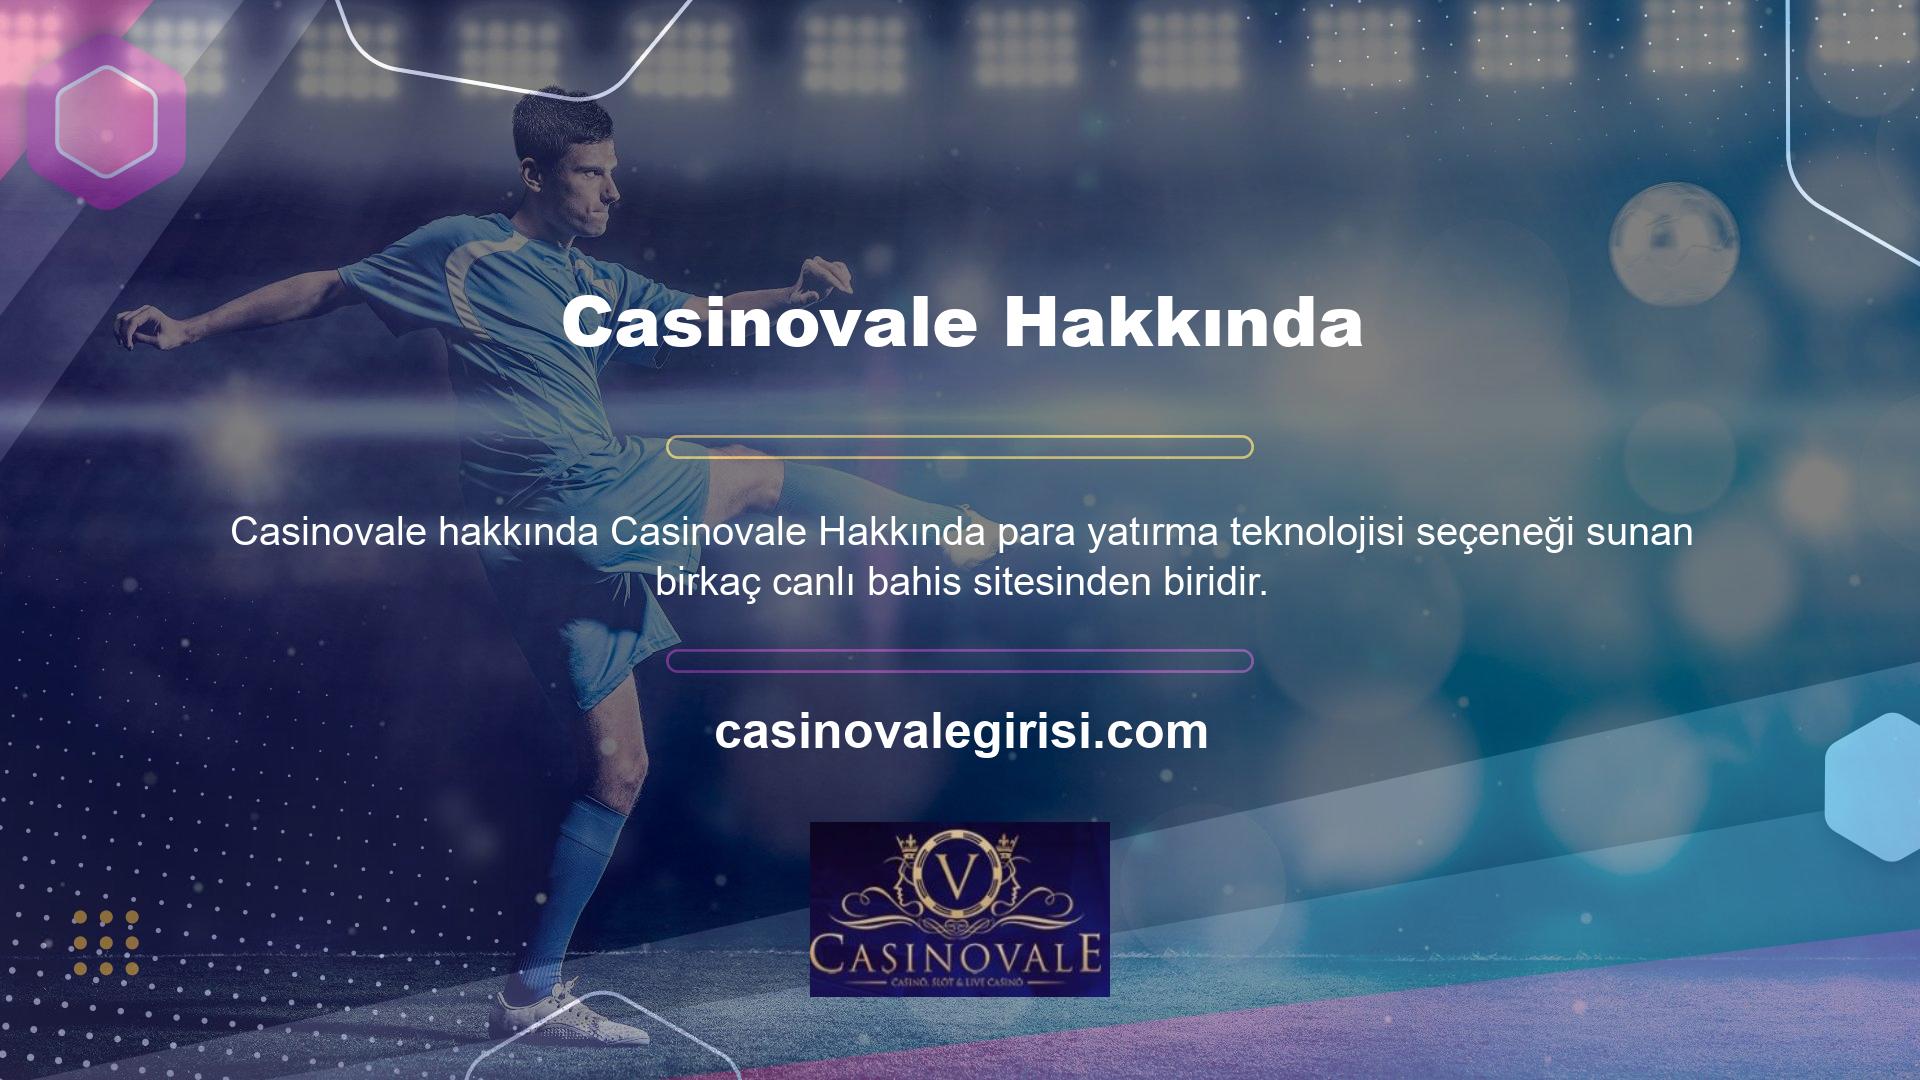 Bu menü, Casinovale web sitesindeki canlı bahis oyunlarına kolay erişim sağlar